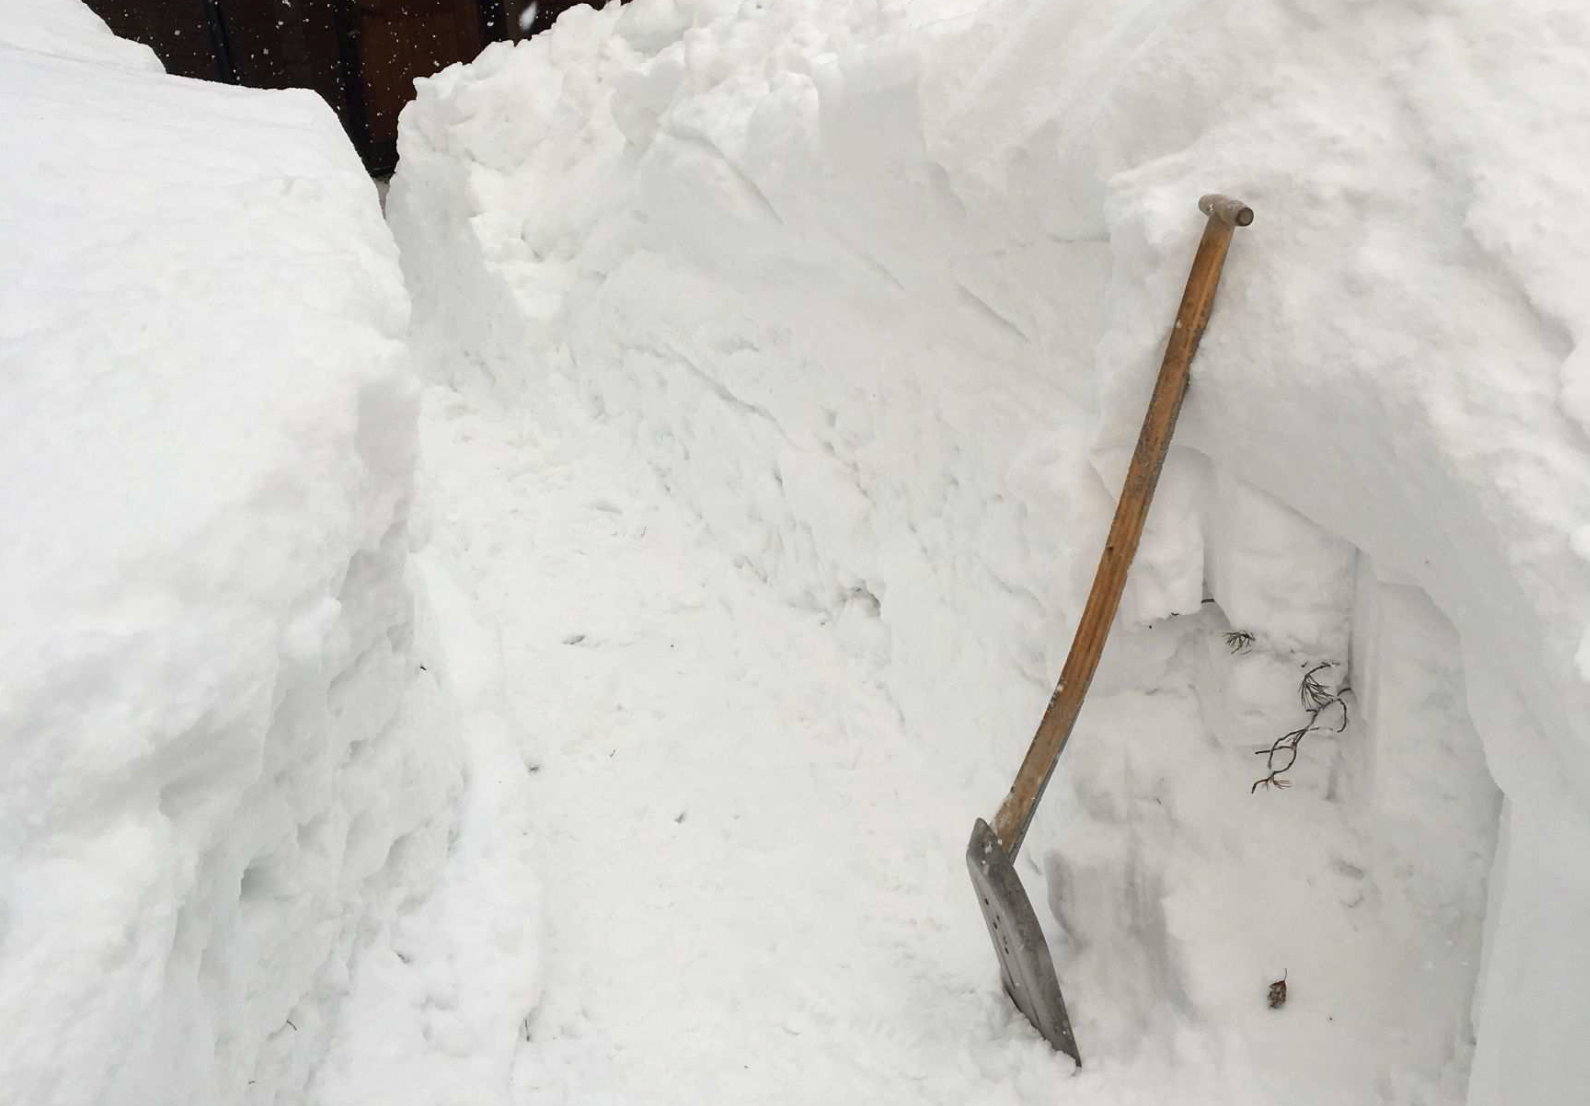 Skyffeln är cirka 110 centimeter lång. Det låg drivor med snö i gången till huset när kvinnan hittades, enligt förundersökningen. 